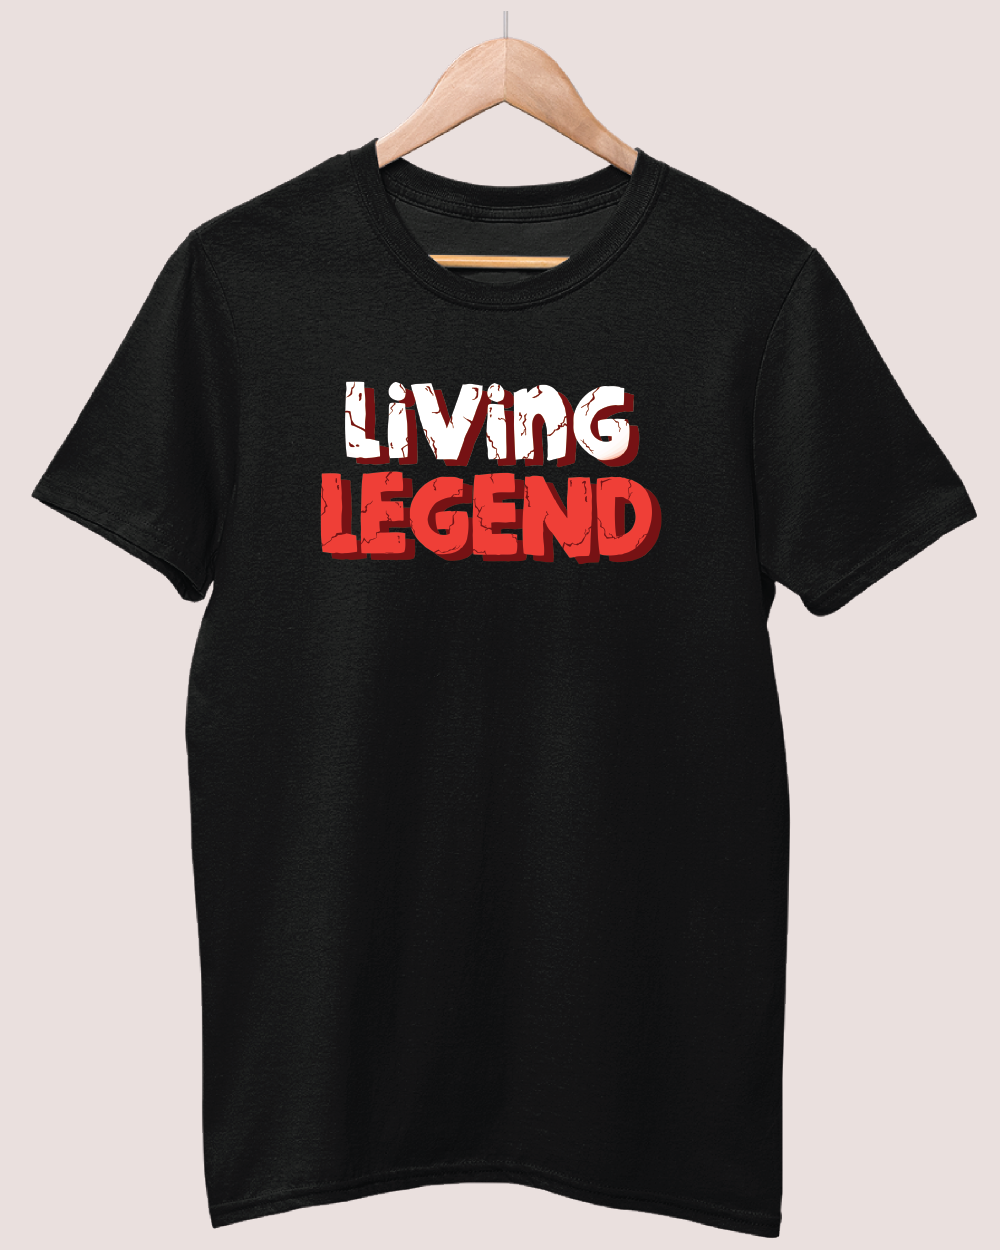 Living legend T-shirt